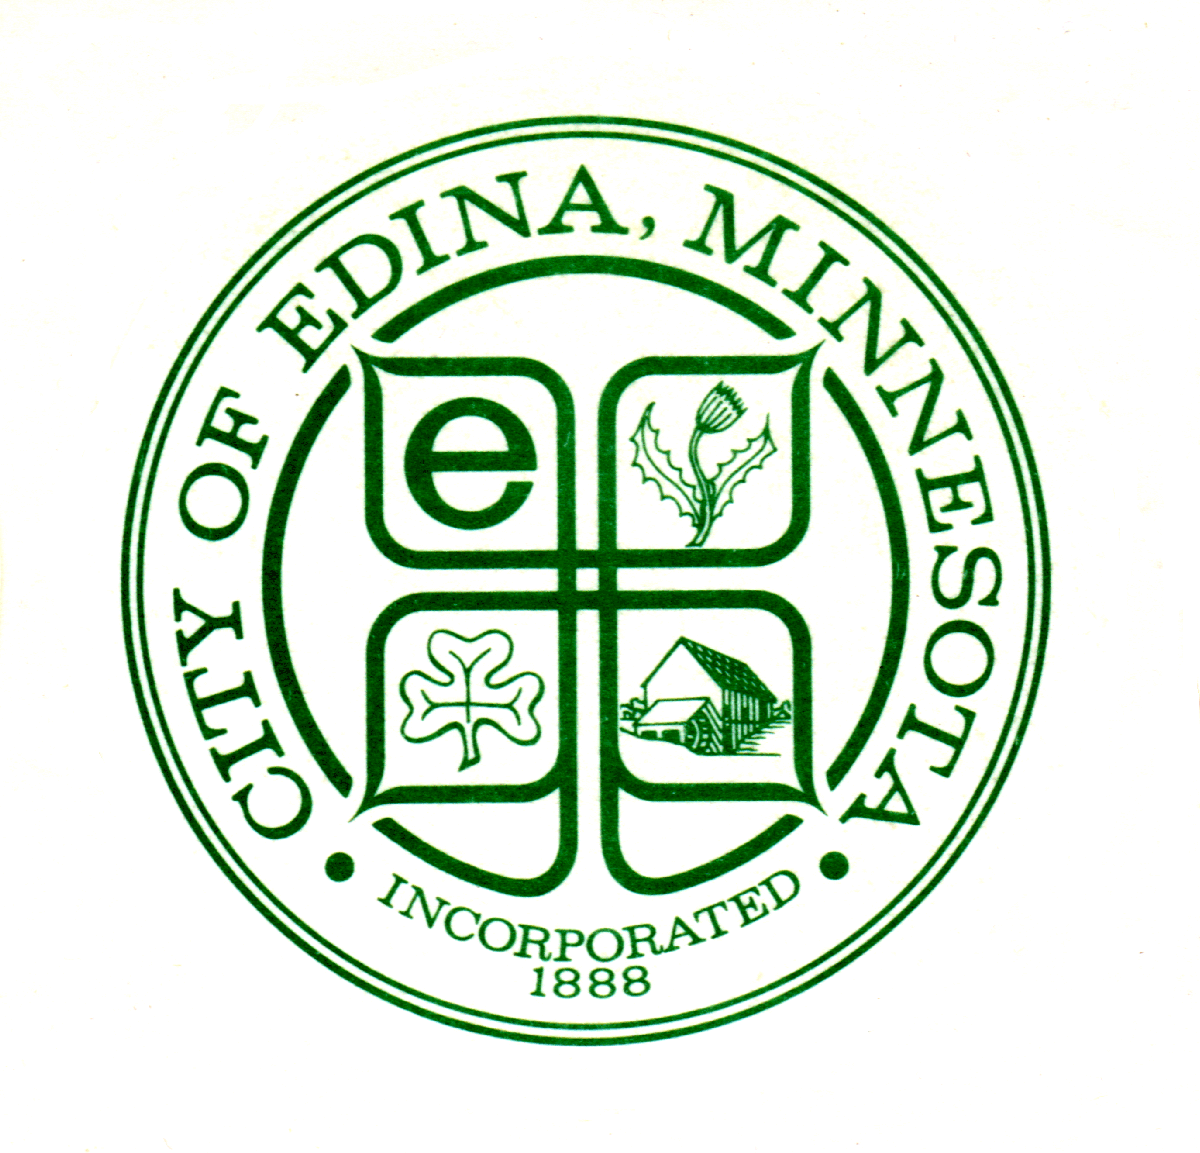 Edina Logo - Edina logo clear - test